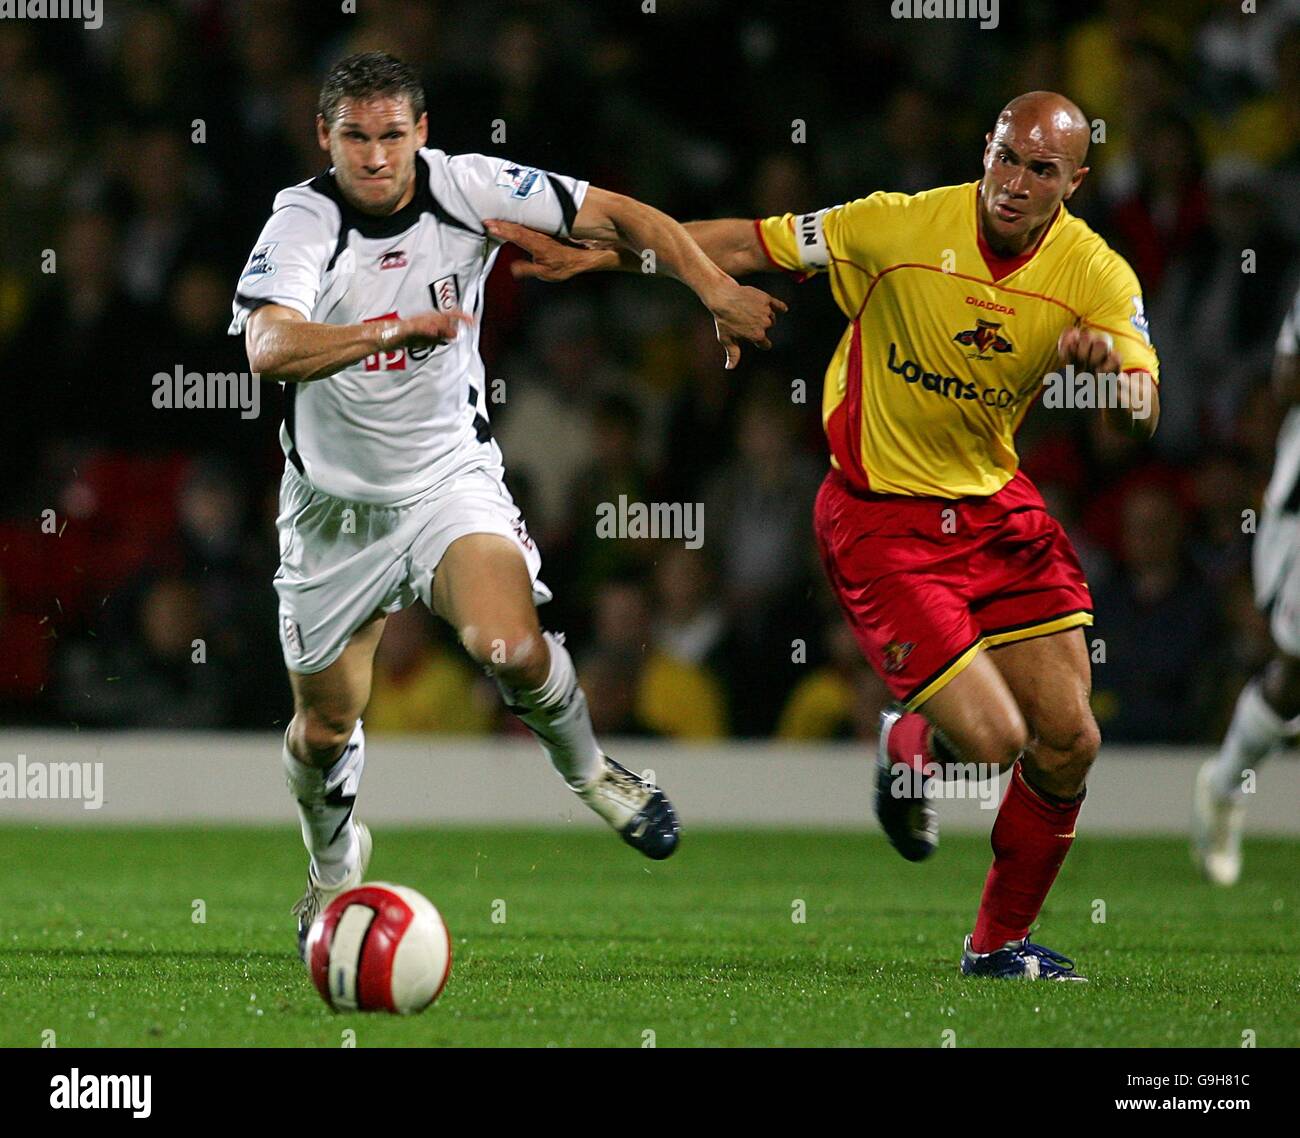 Soccer - FA Barclays Premiership - Watford v Fulham - Vicarage Road. Watford's Gavin Mahon and Fulham's Moritz Volz Stock Photo